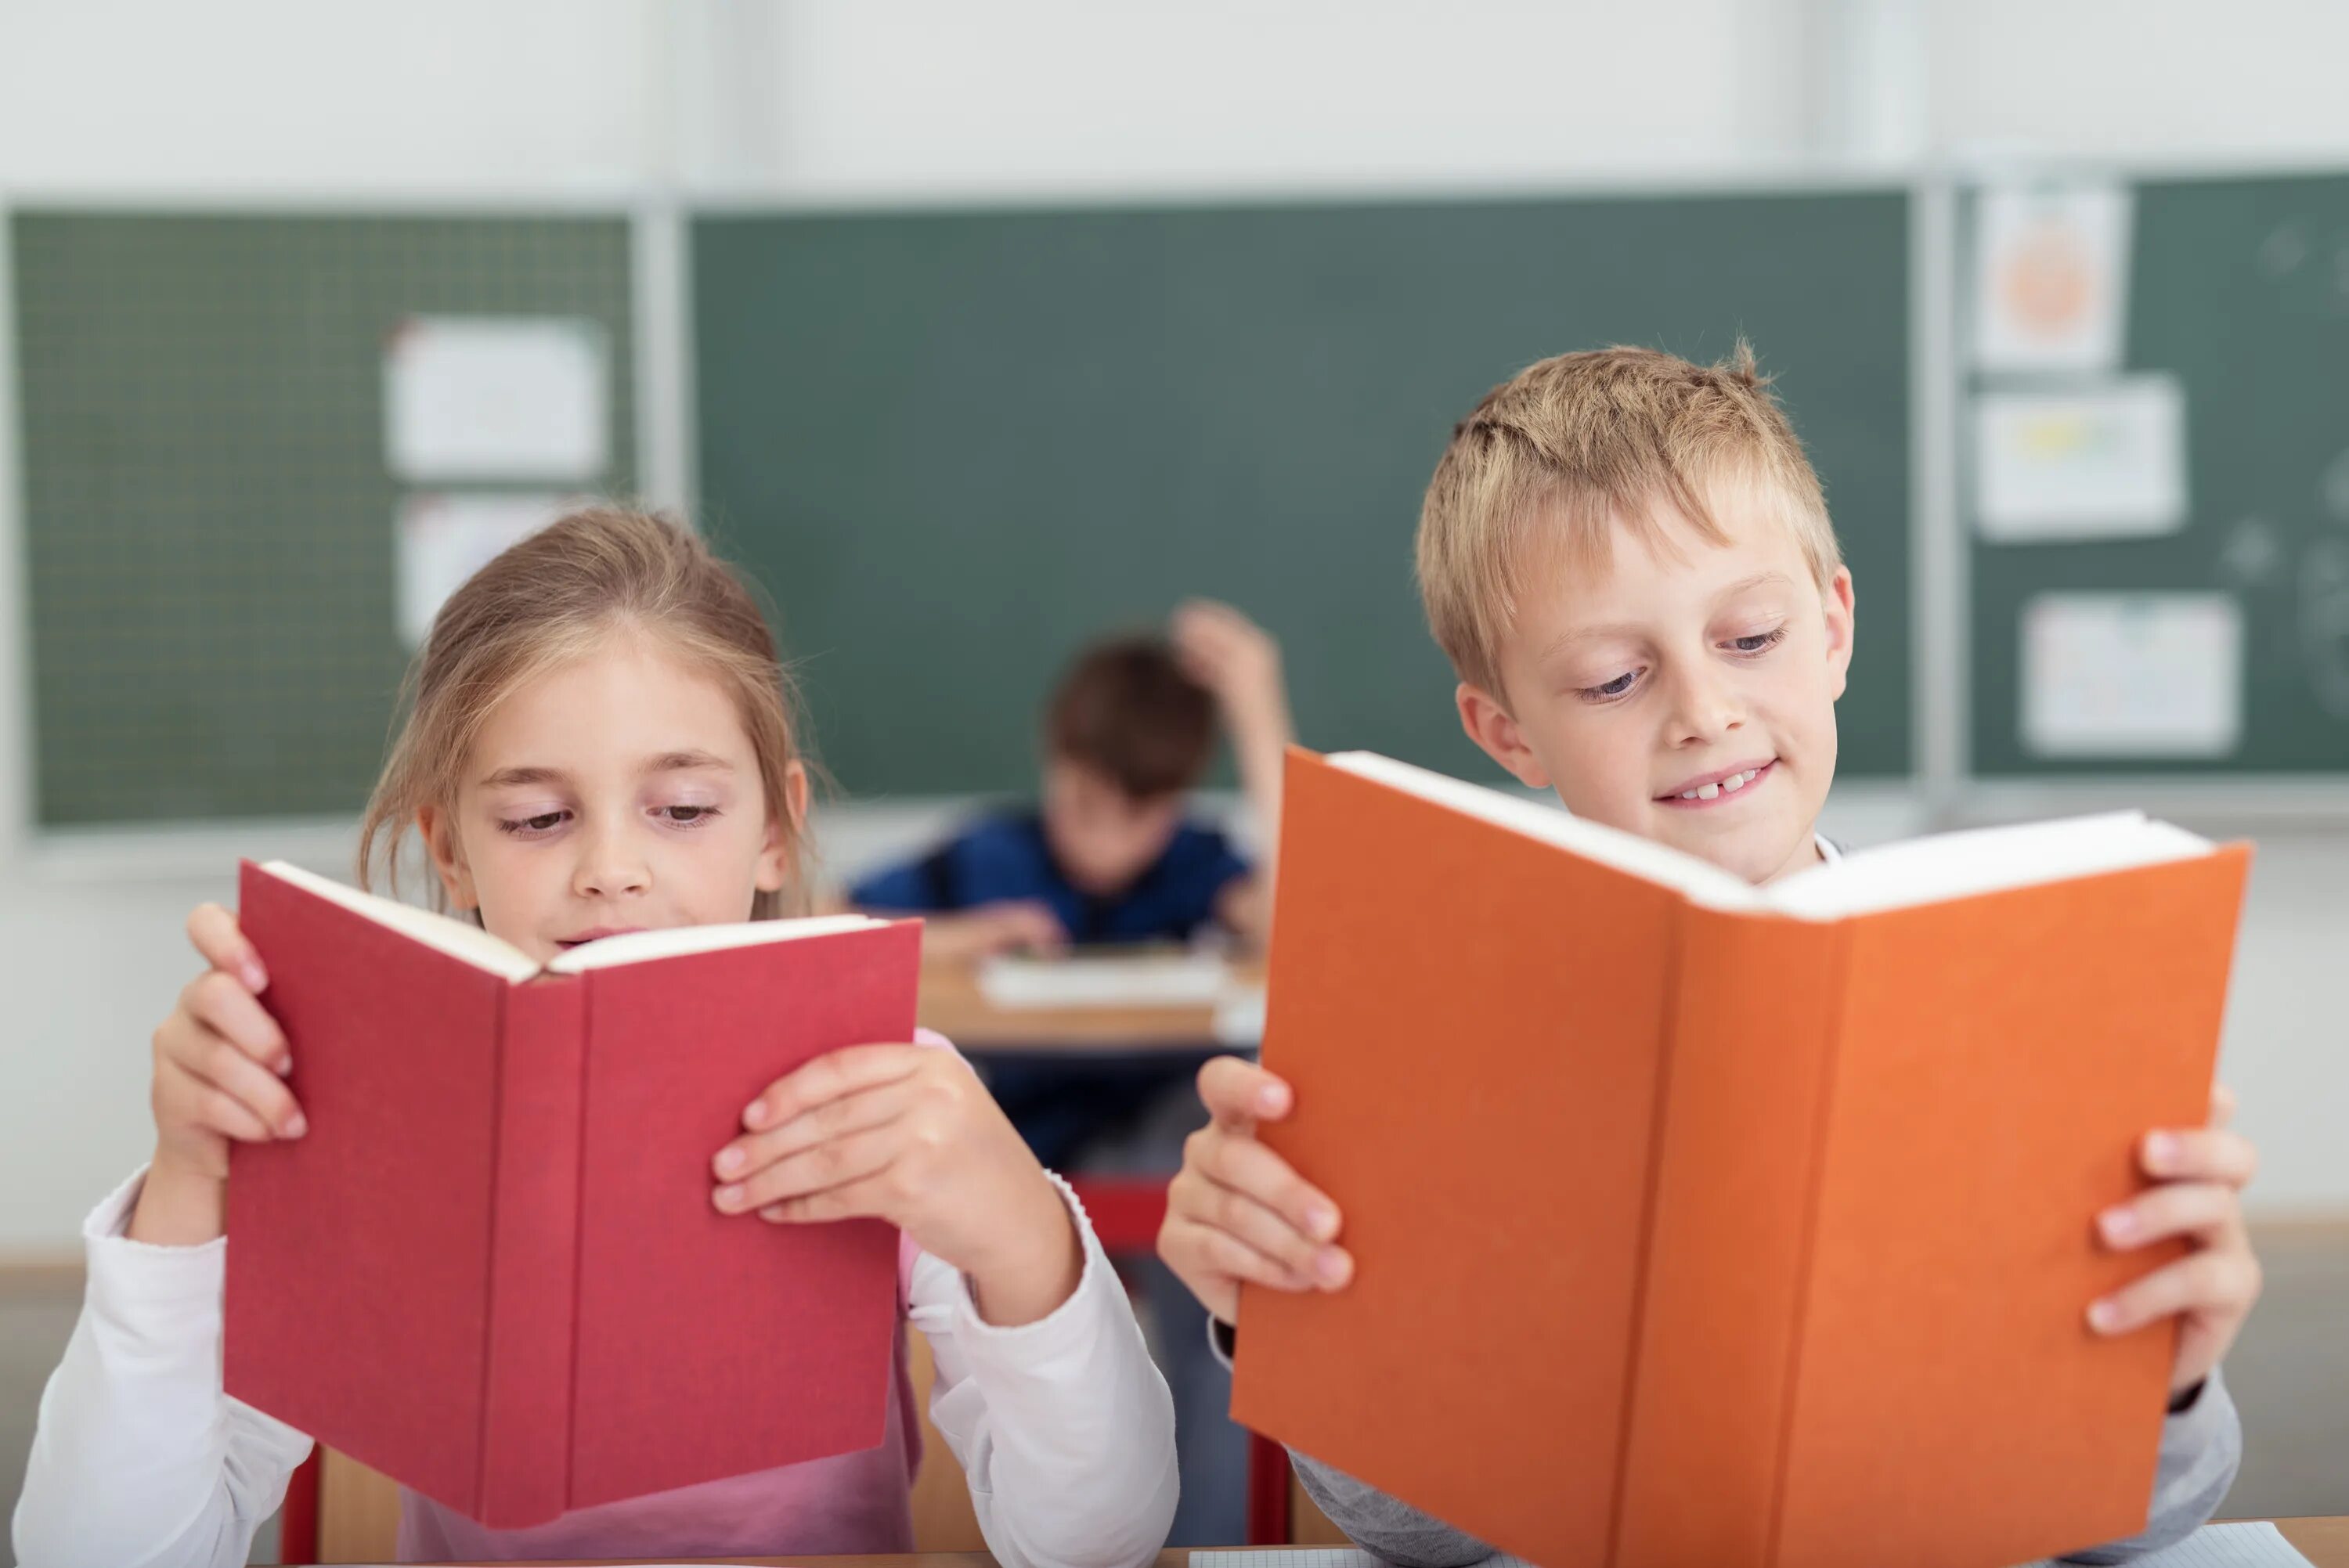 Читать ученик 12. Ученик читает. Школьник читает. Дети читают в классе. Ученик с книгой картинки.